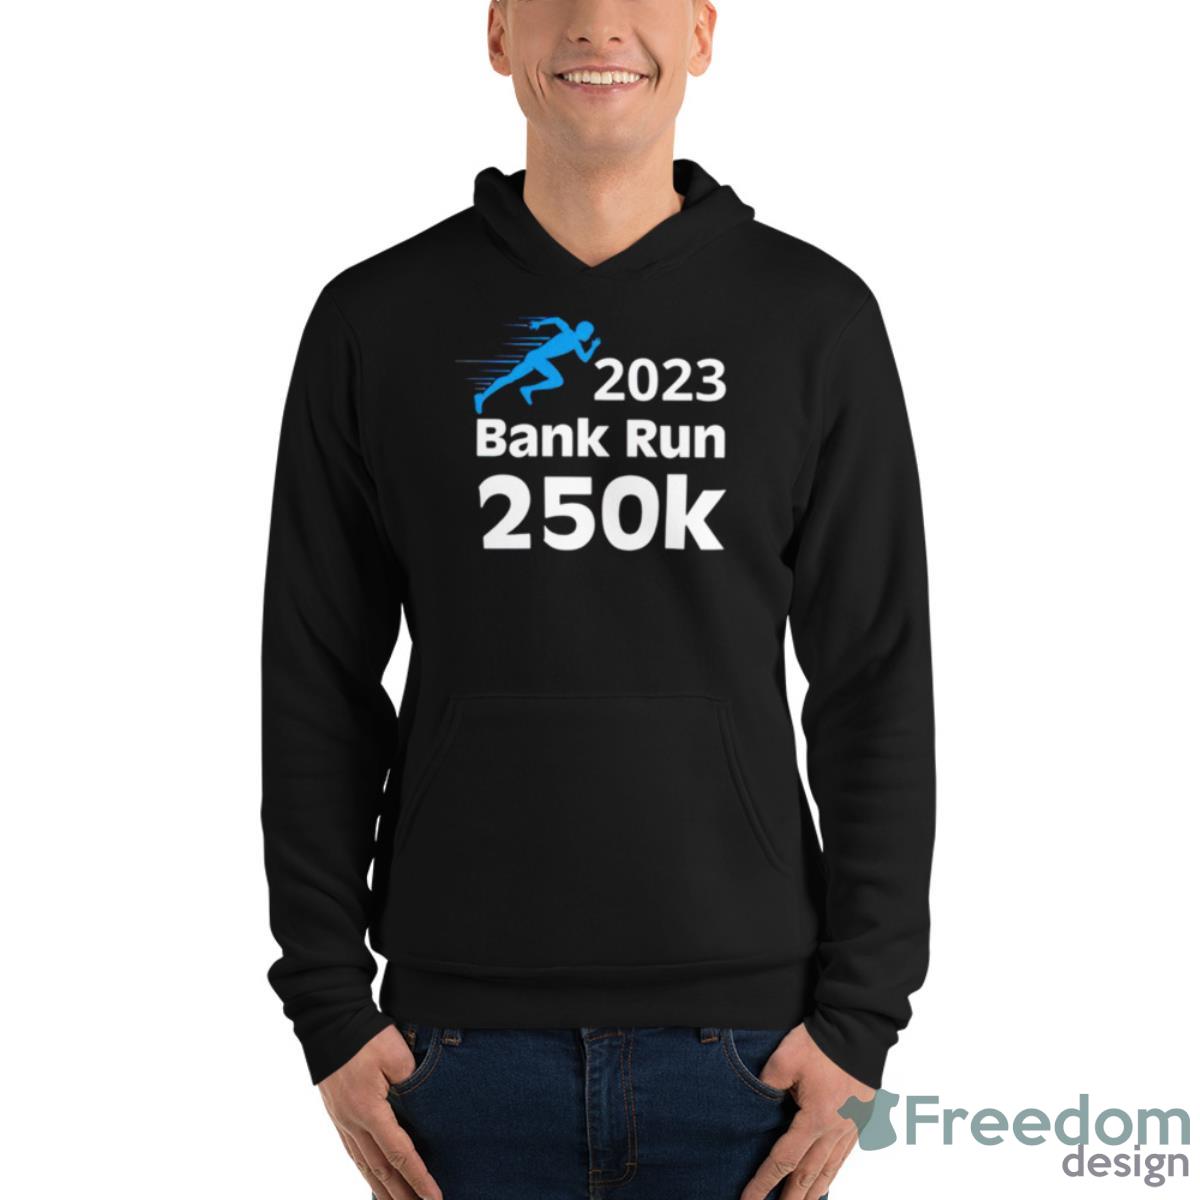 Svb 2023 Bank Run 250K Shirt